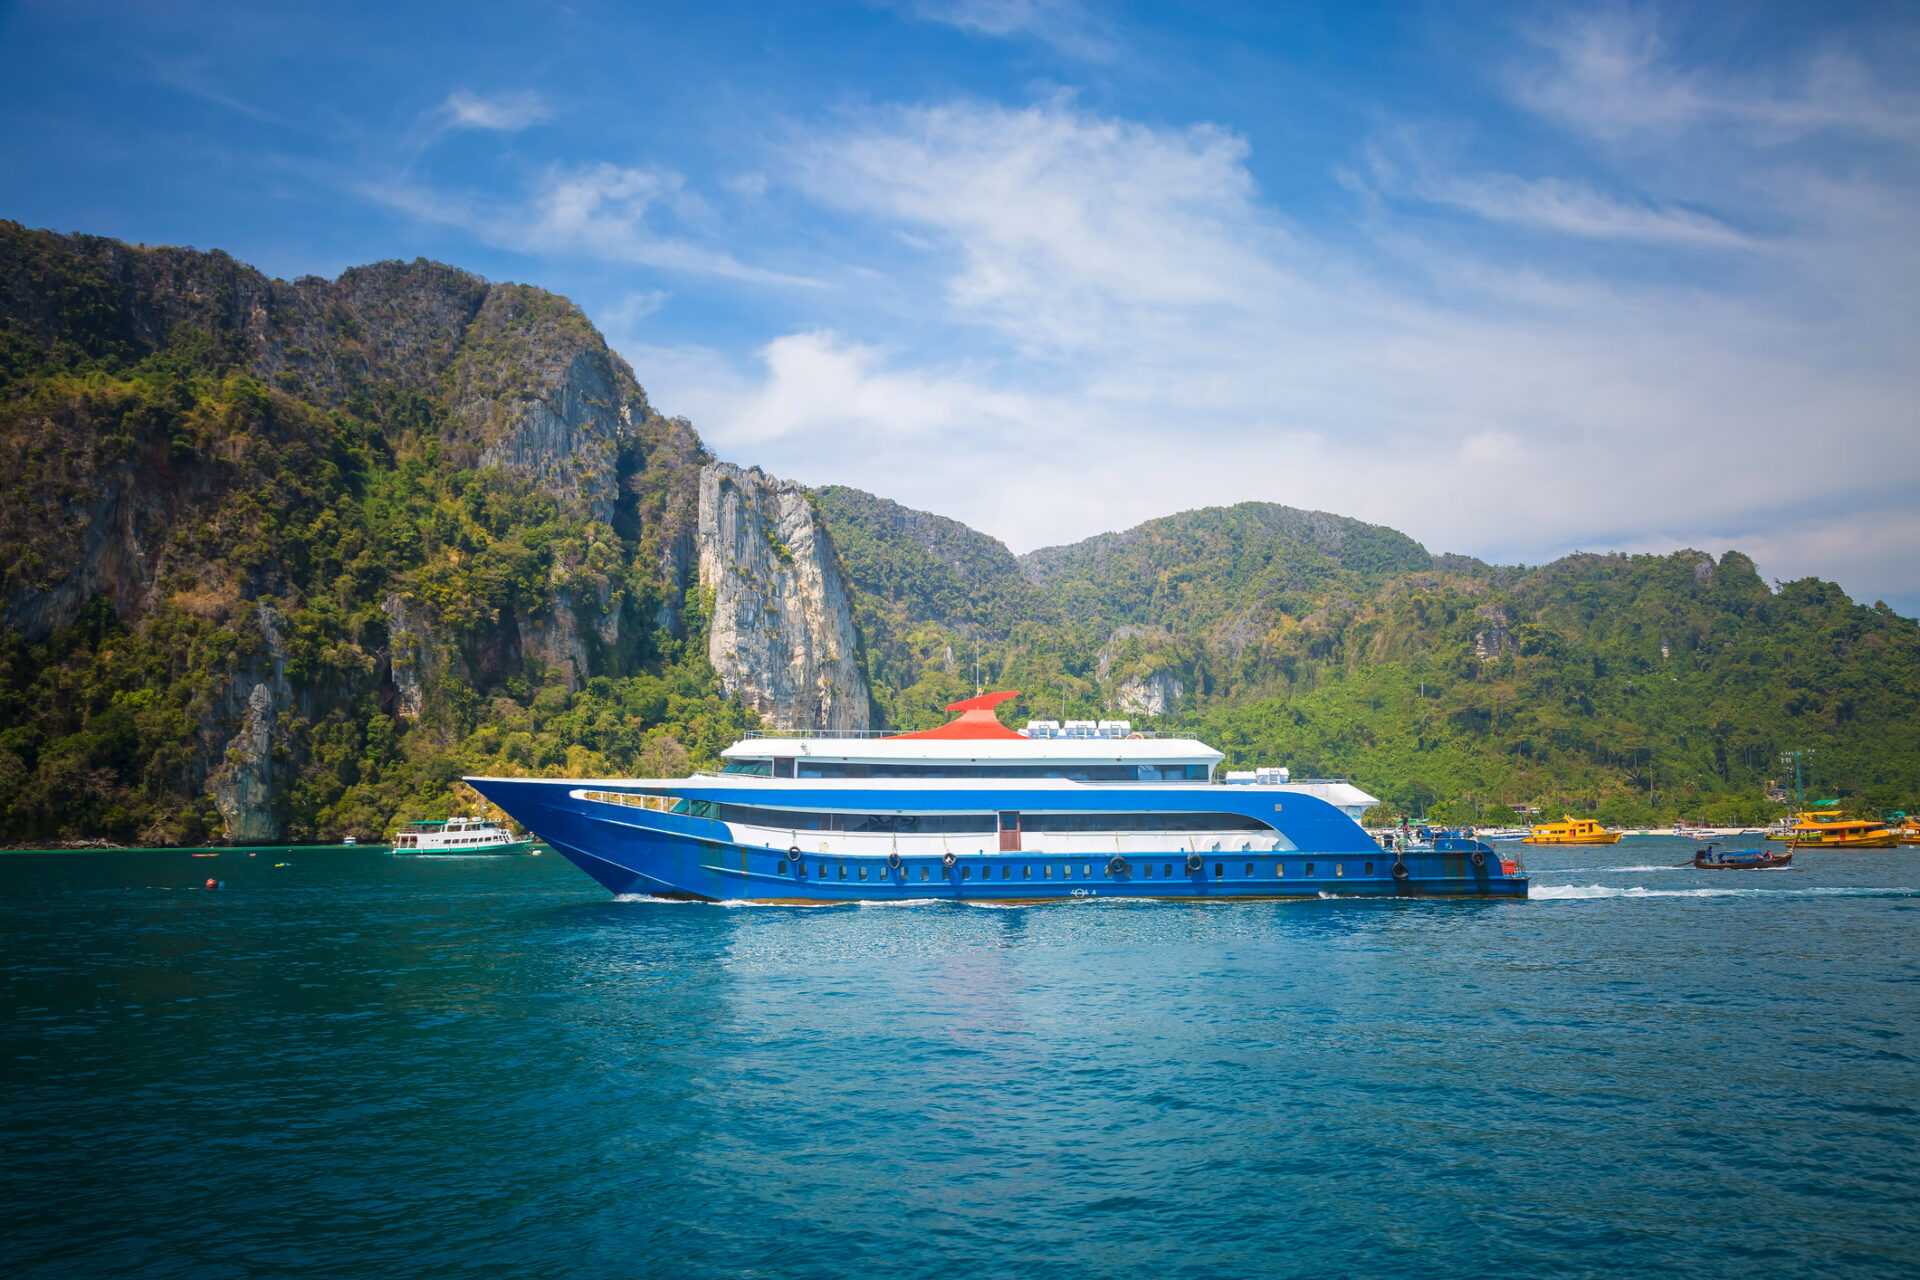 Traditionel thailandsk transportbåd i blå og hvid nær et bjerg i vandet